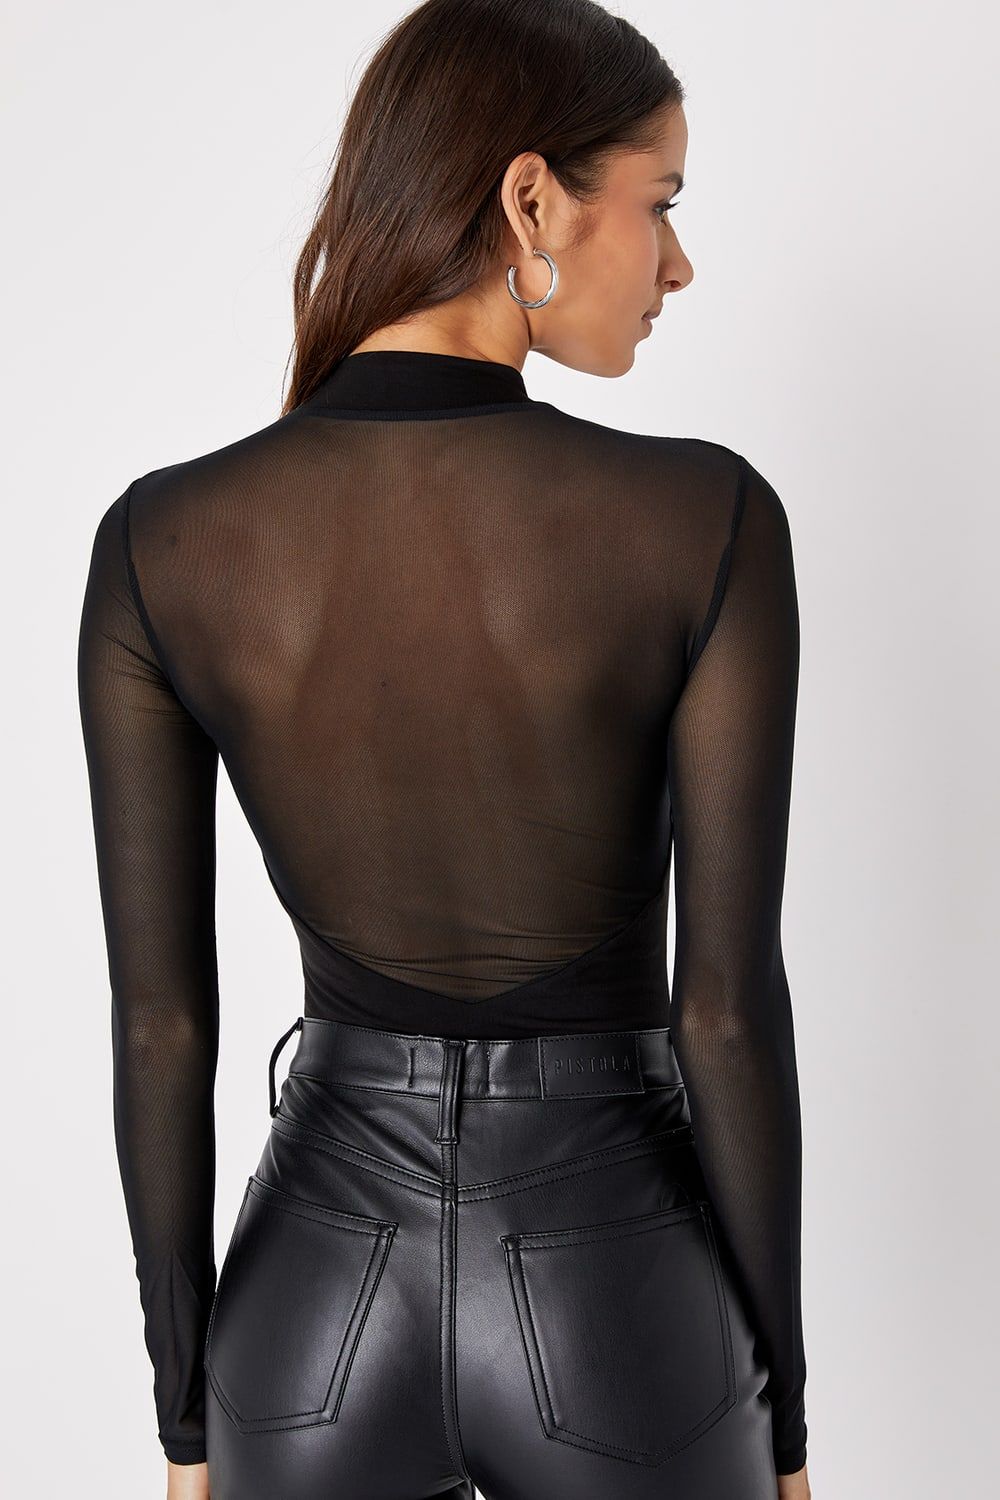 Entrancing Black Mesh Long Sleeve Bodysuit | Lulus (US)